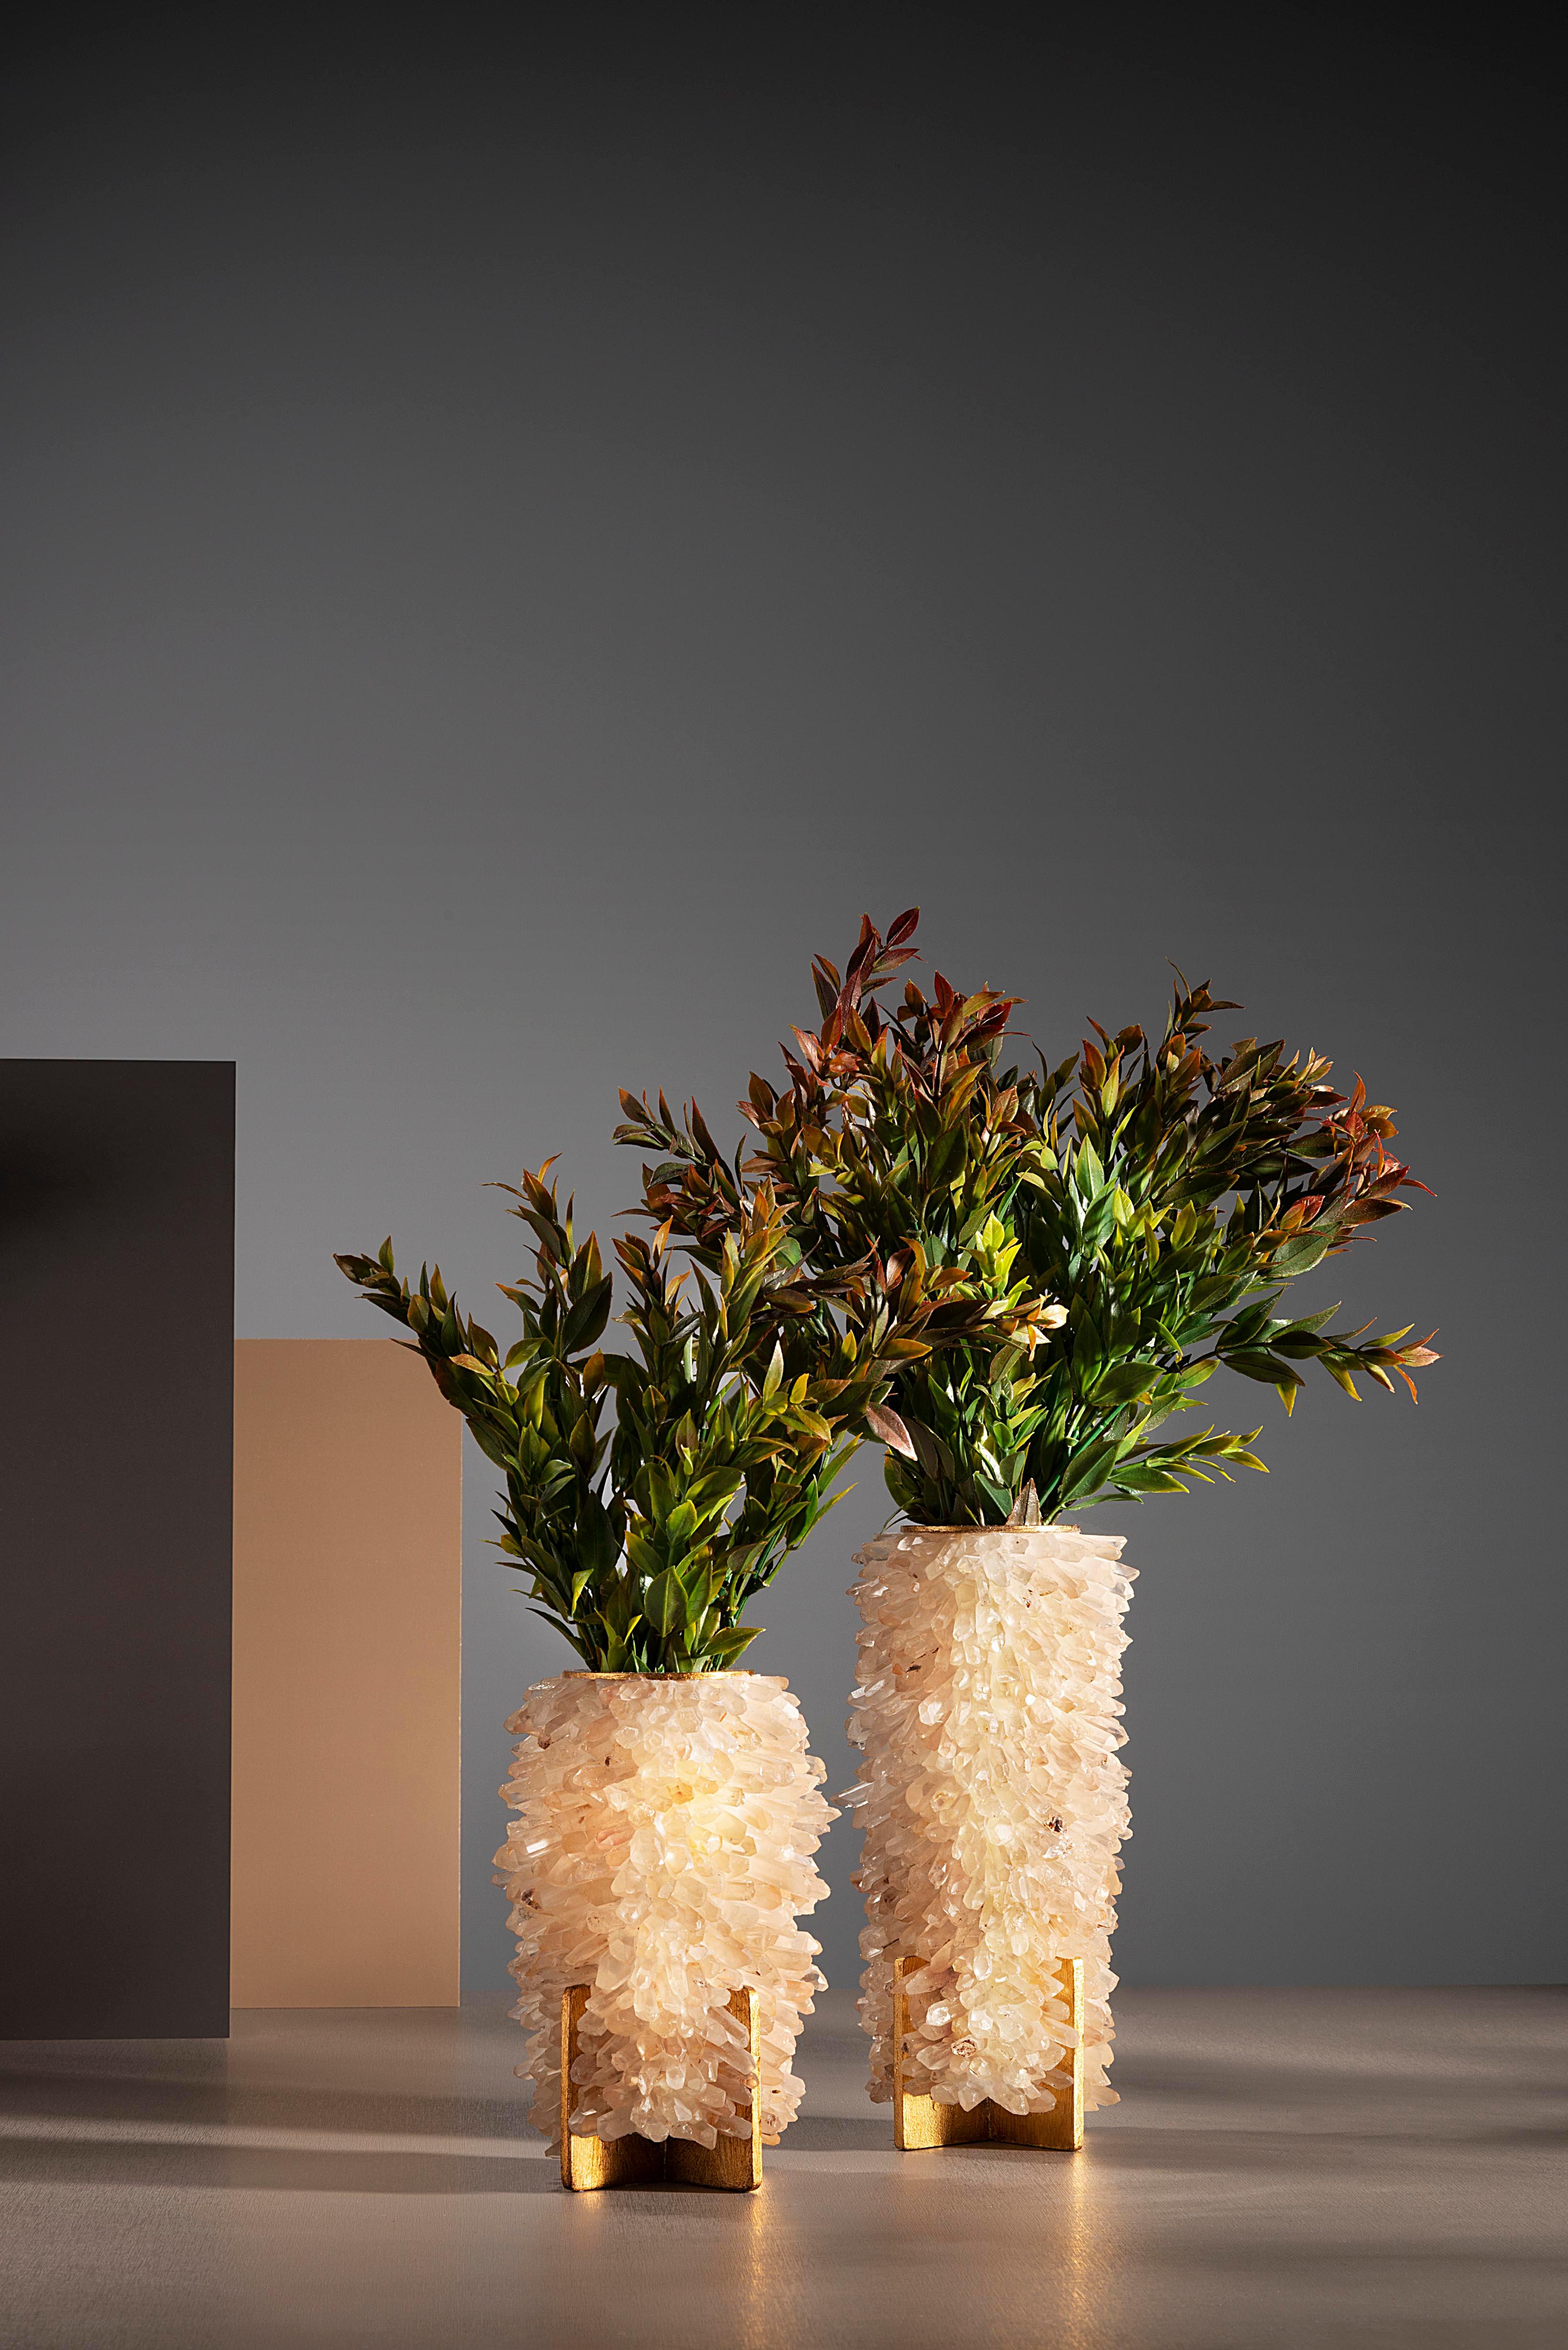 Quartz sculptural vase, medium entitled frozen 
Dimensions: D 20 x H 28 cm
Materials: Quartz, steel, polyvinyl chloride, resin.
     